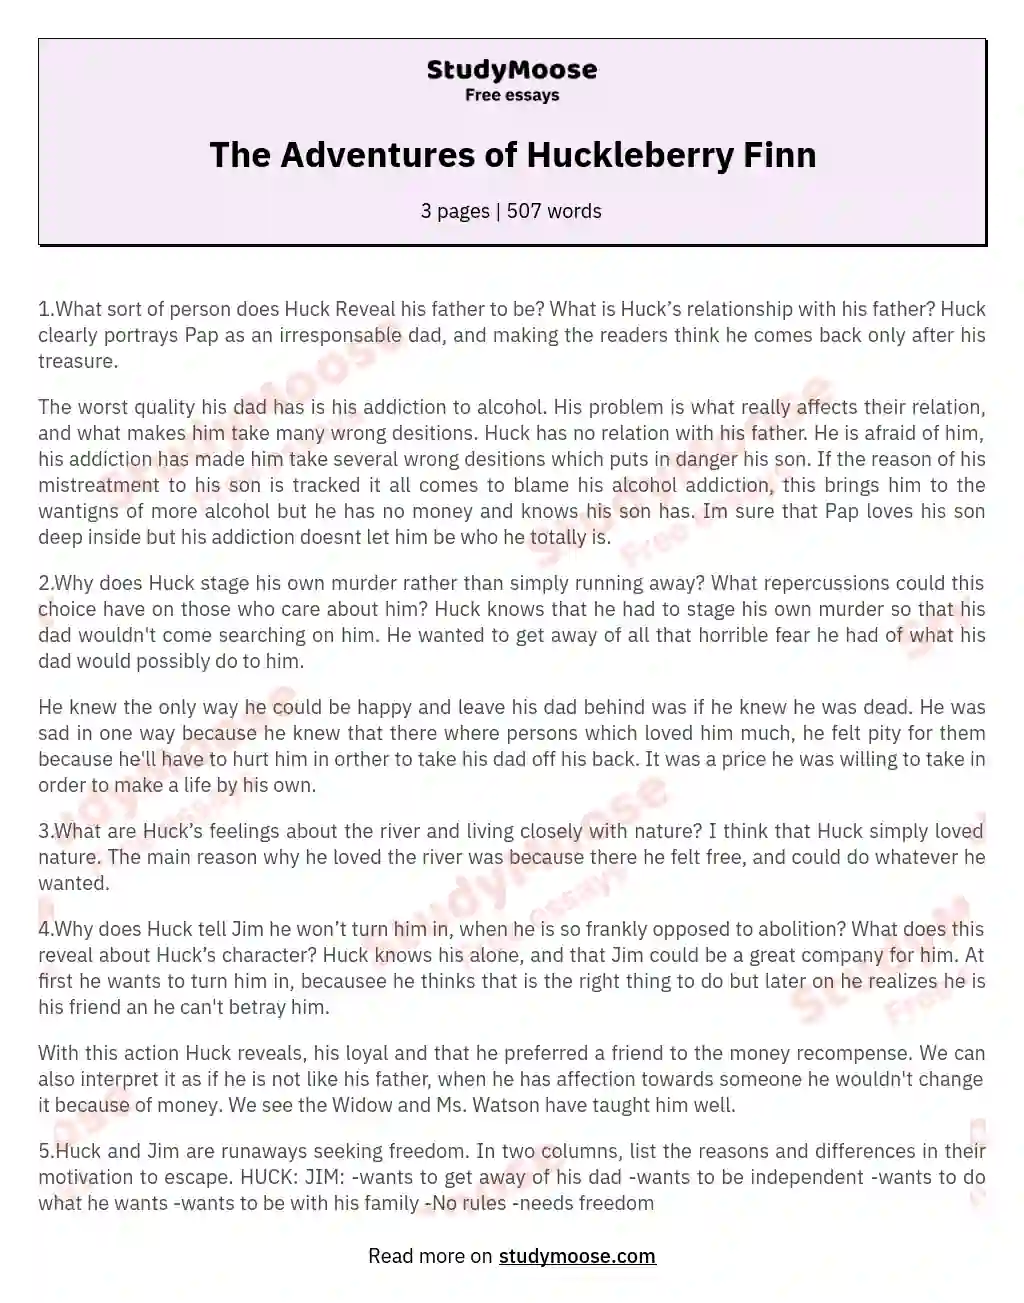 The Adventures of Huckleberry Finn essay